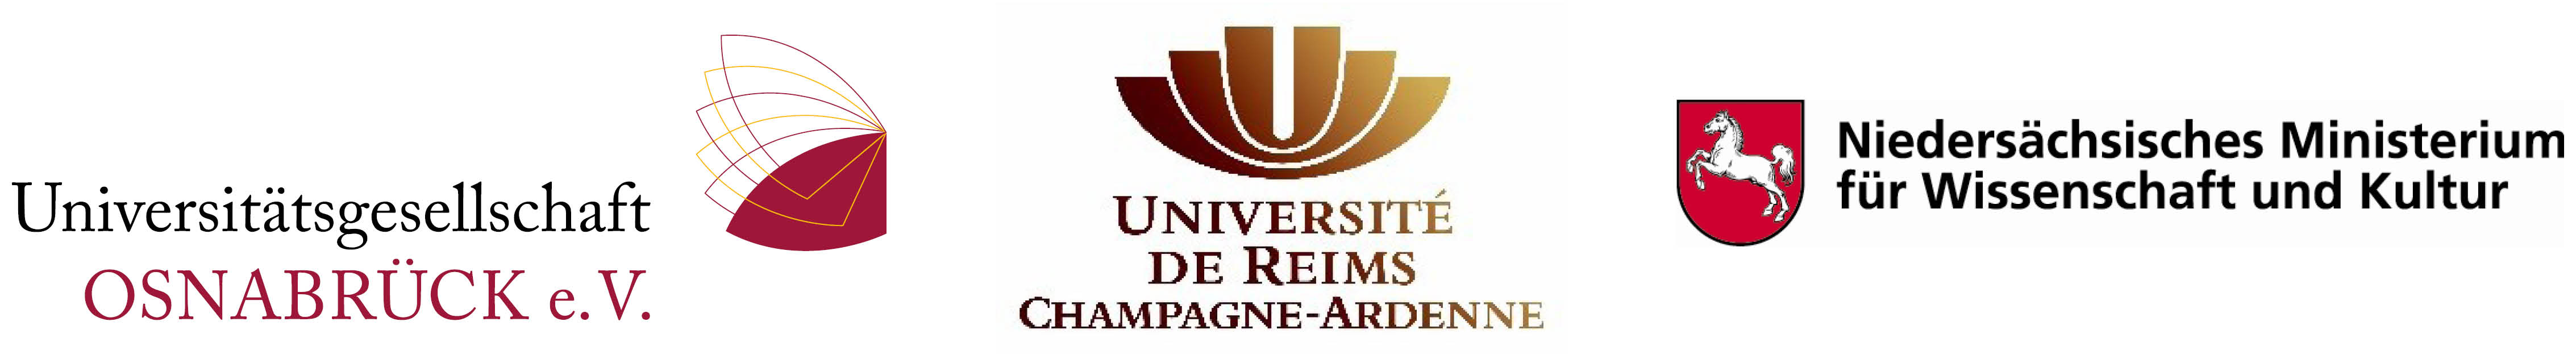 Mit freundlicher Unterstützung von: Universitätsgesellschaft Osnabrück e.V., Université de Reims Champagne-Ardenne, Niedersächsisches Ministerium für Wissenschaft und Kultur